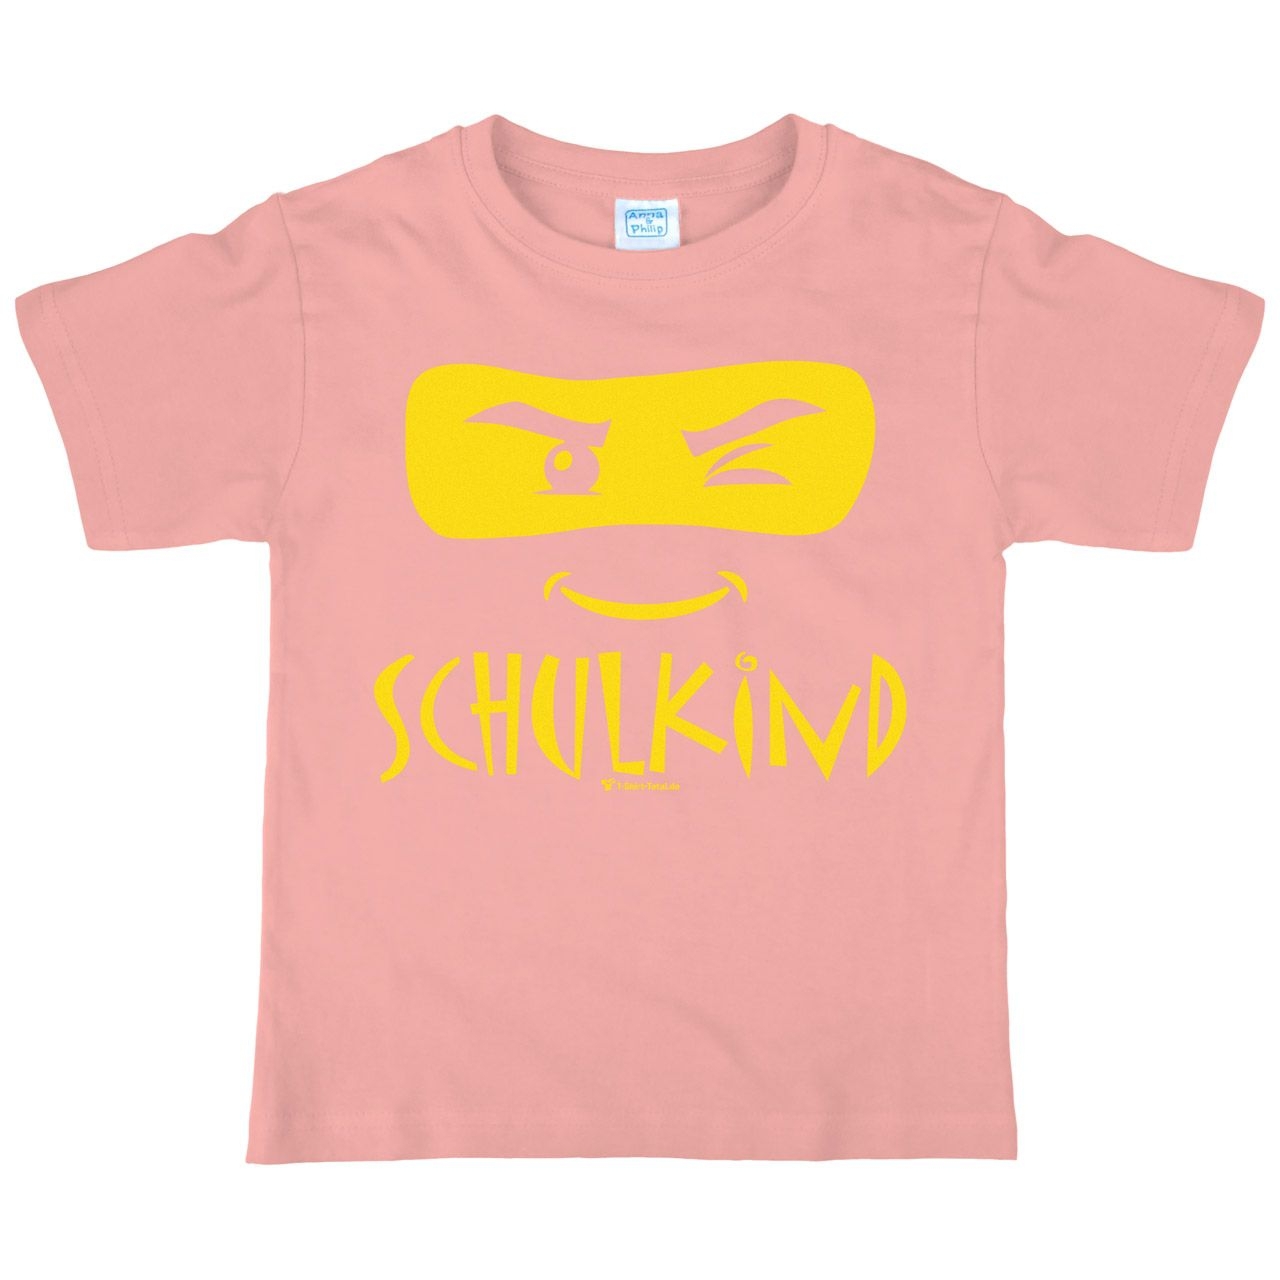 Schulkind Maske Kinder T-Shirt mit Name rosa 122 / 128